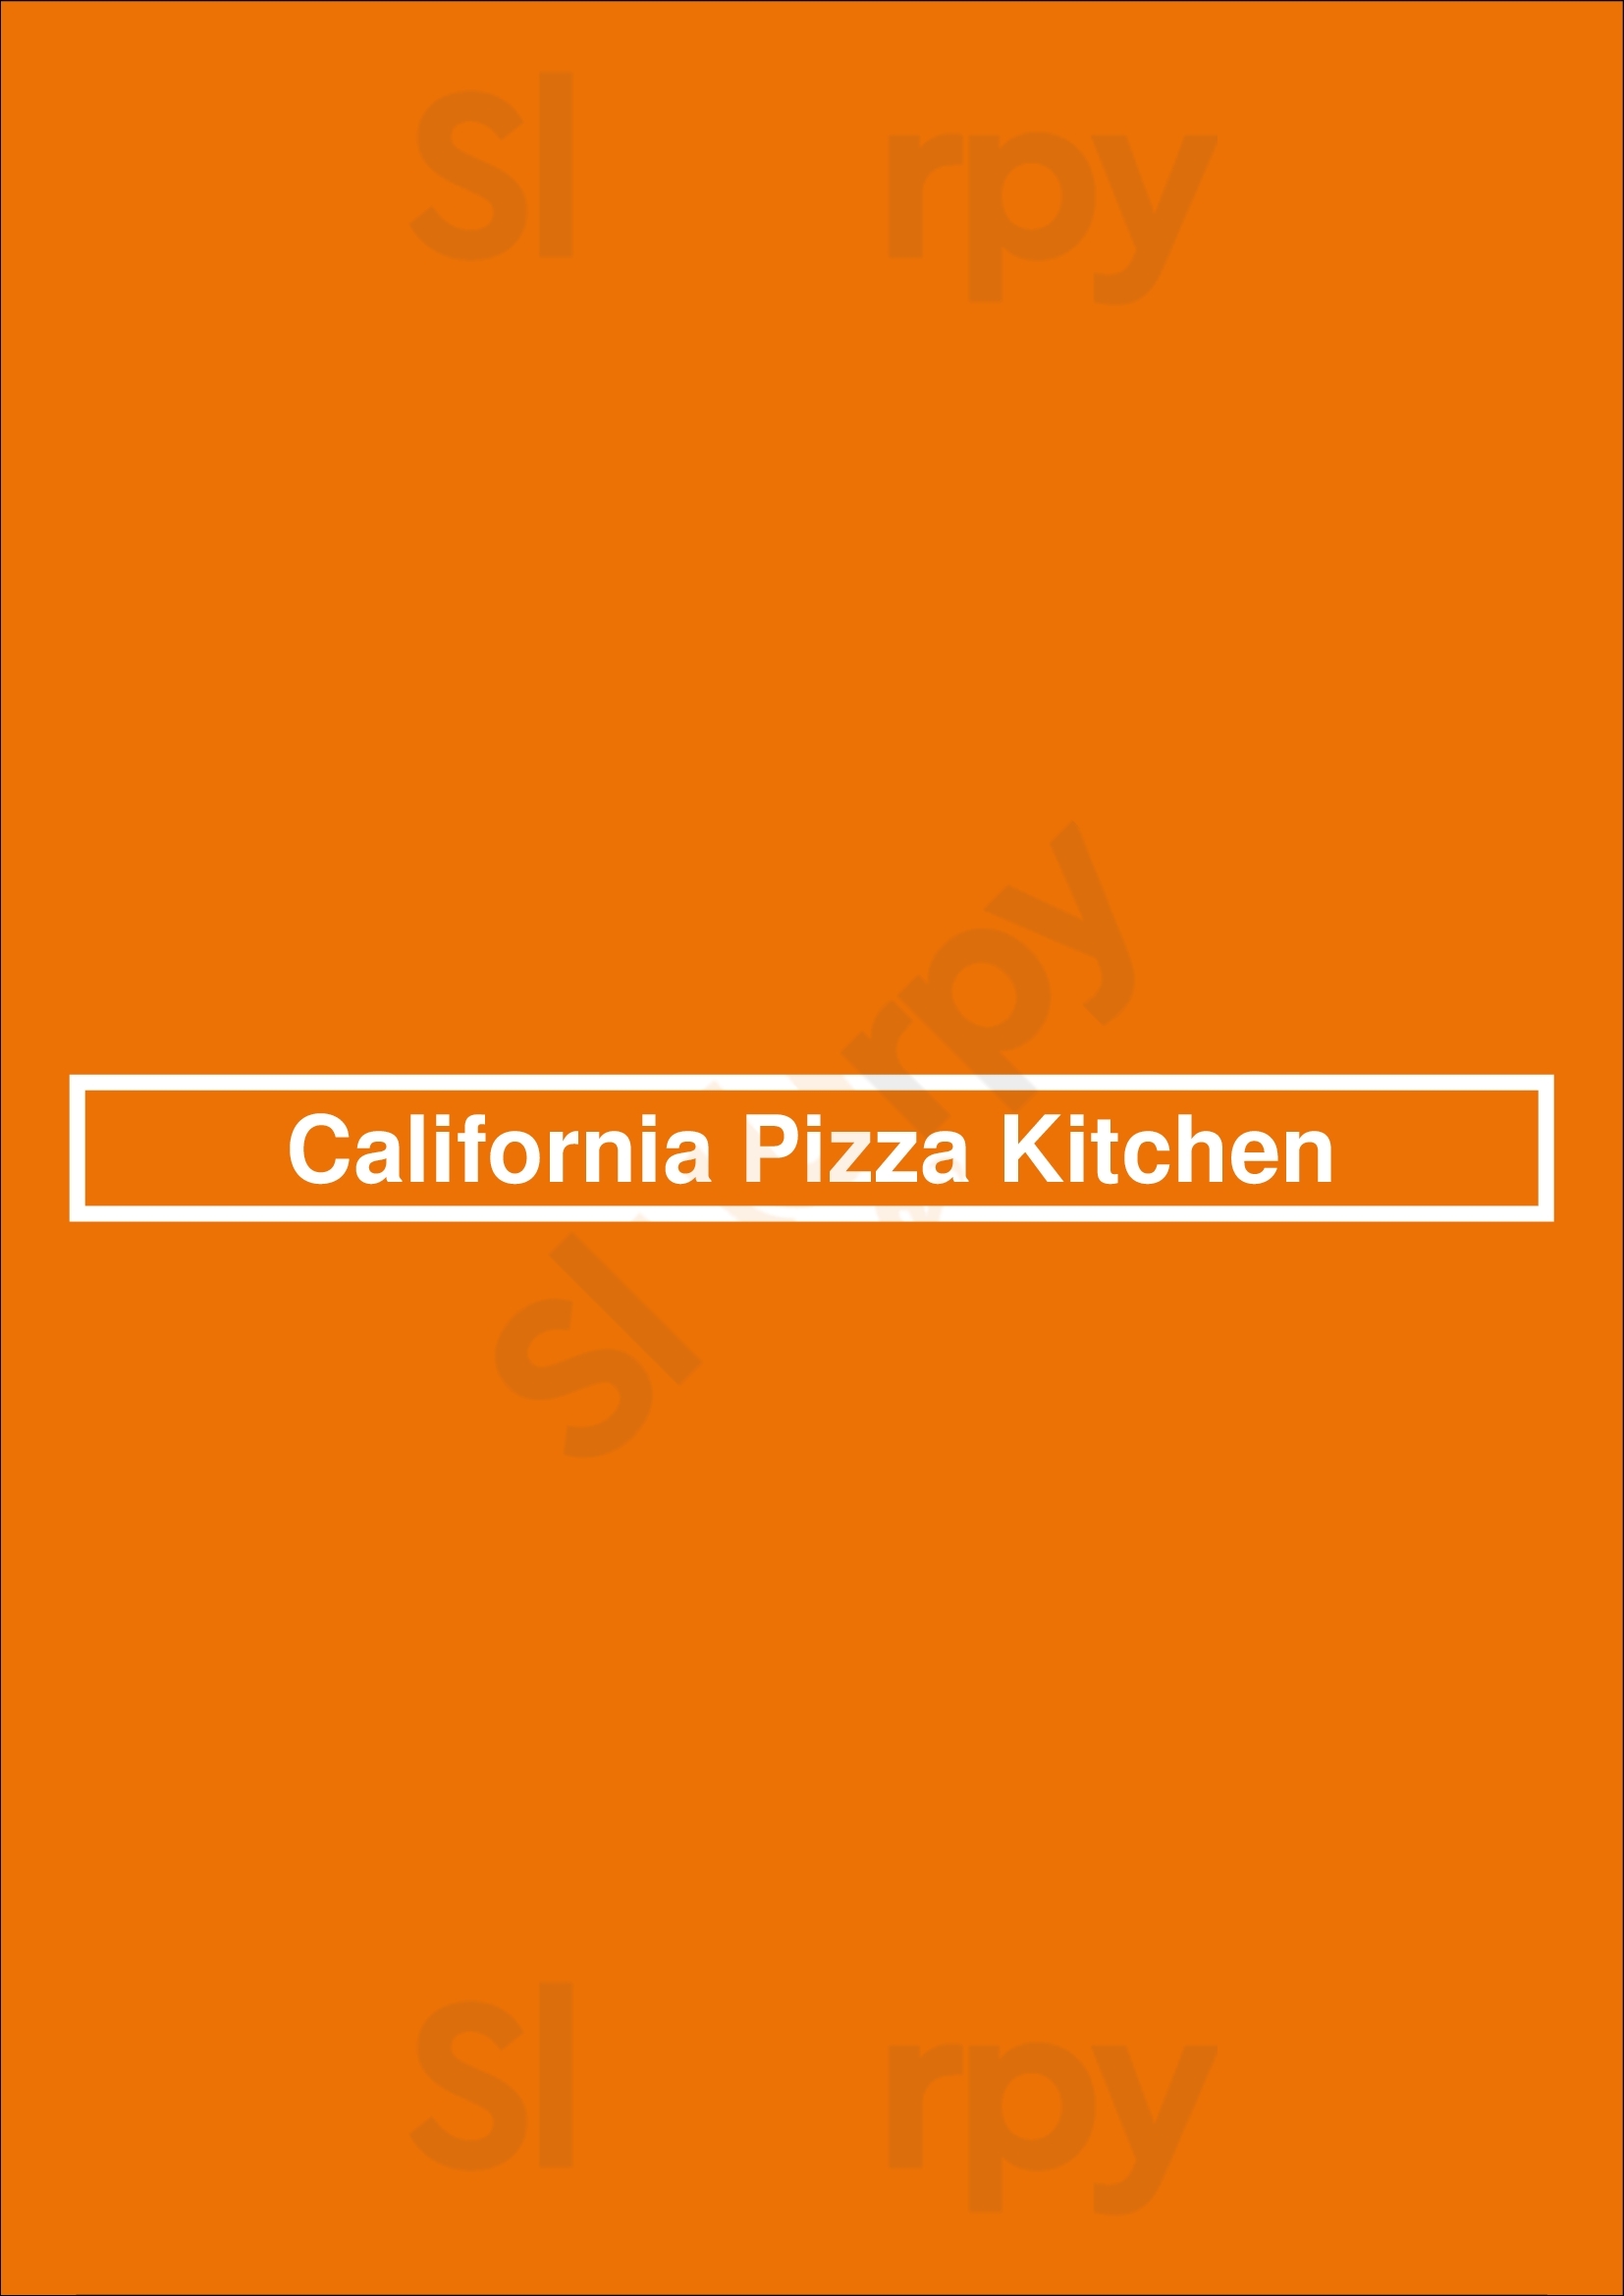 California Pizza Kitchen Nashville Menu - 1